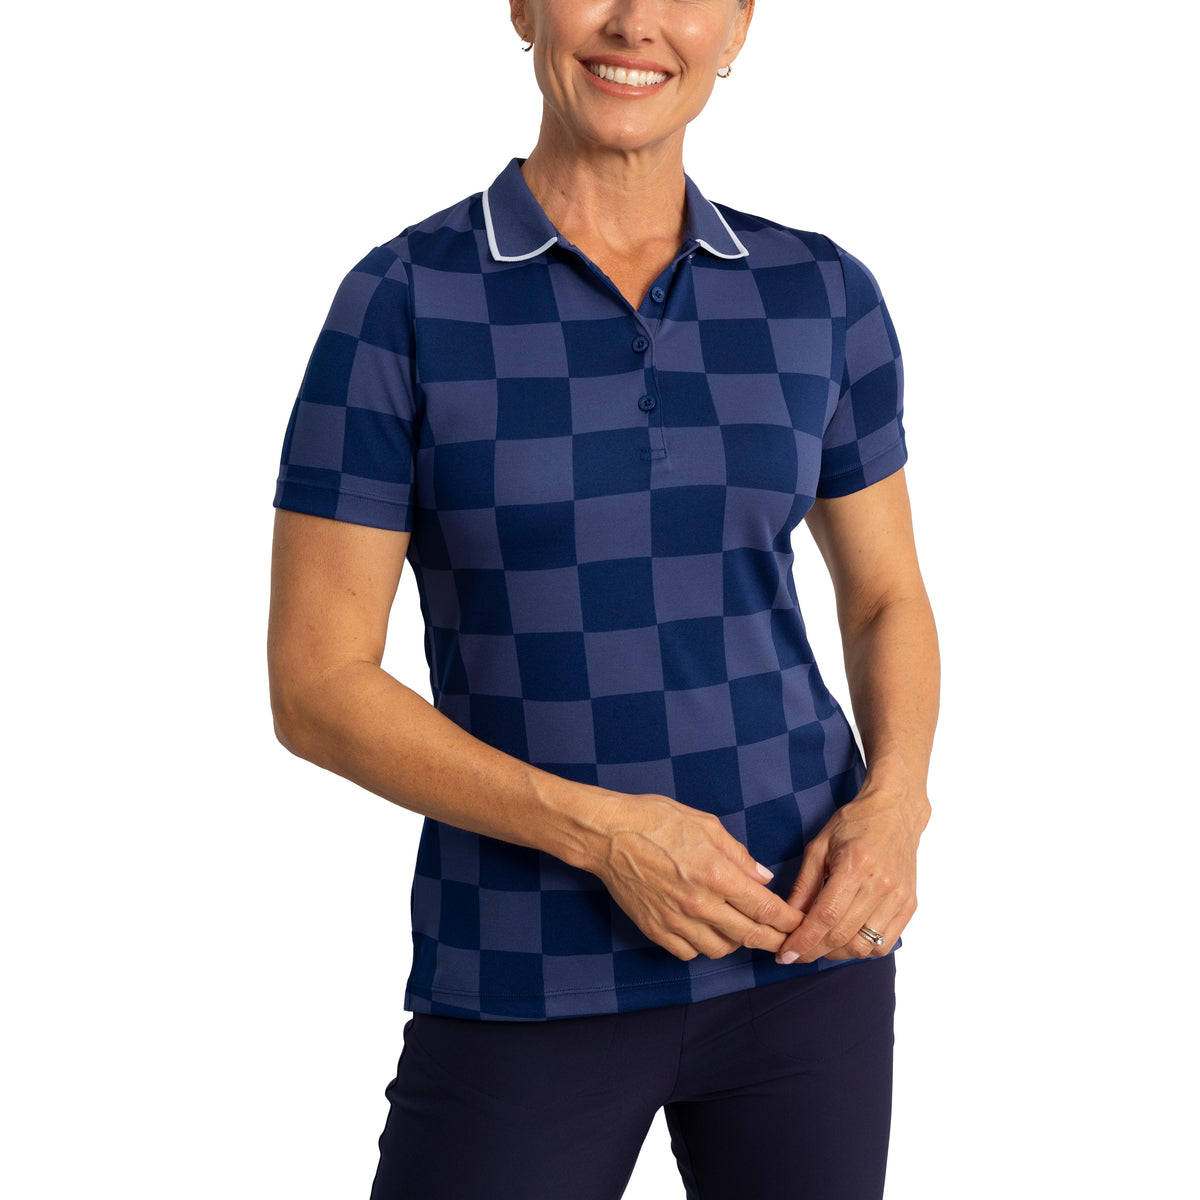 Cross Women's Grip Golf Polo Shirt - Twilight Blue